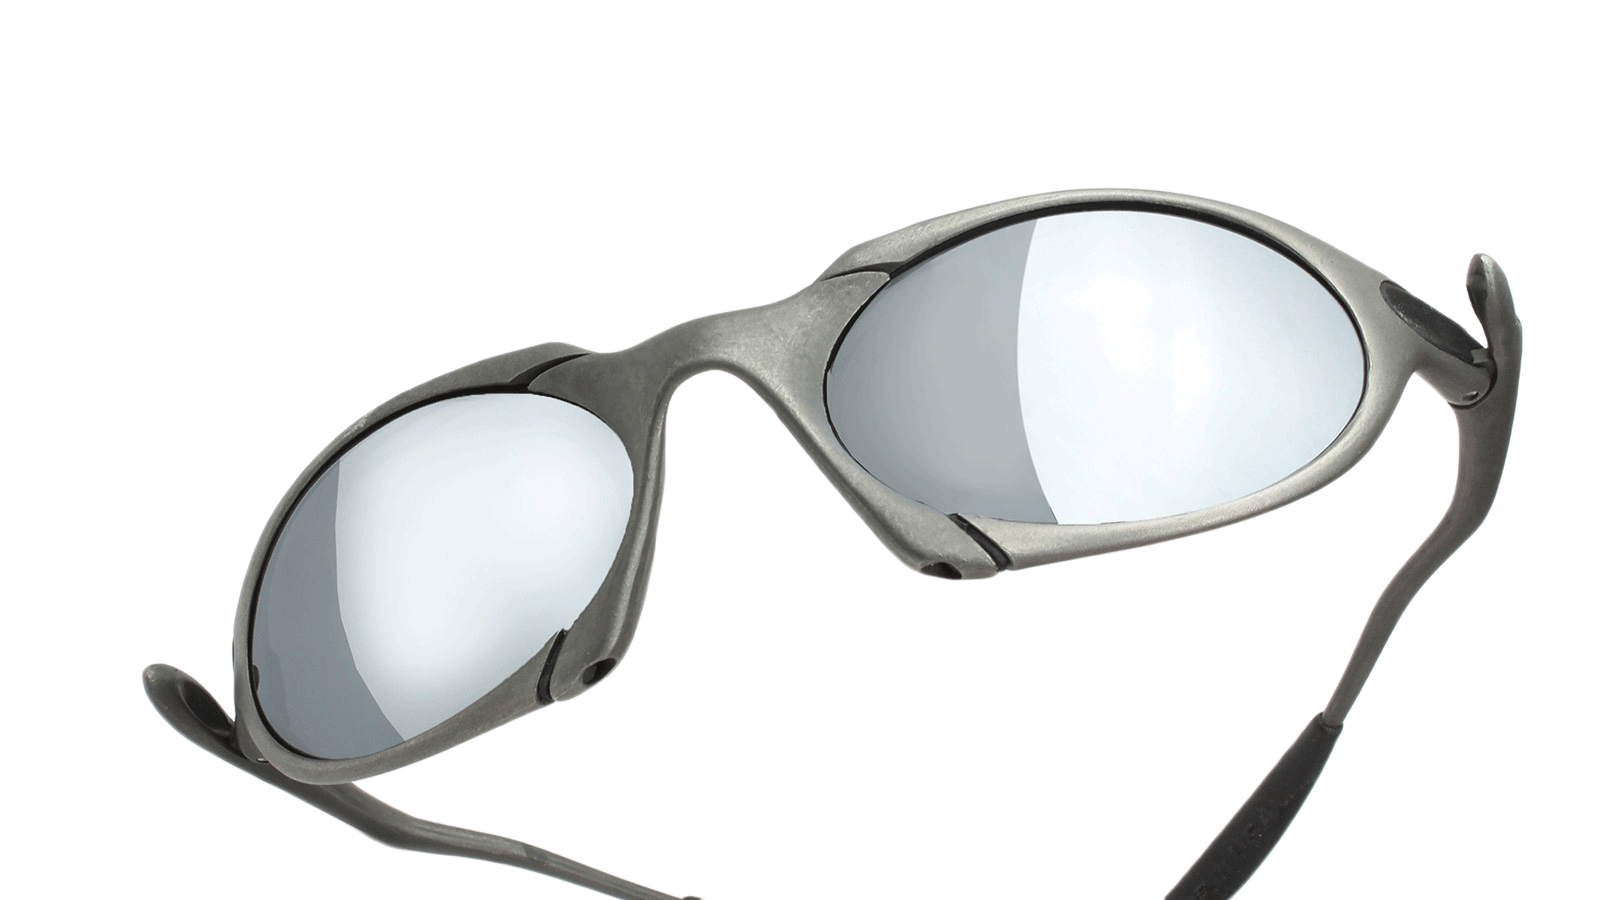 Oakley Romeo sunglasses